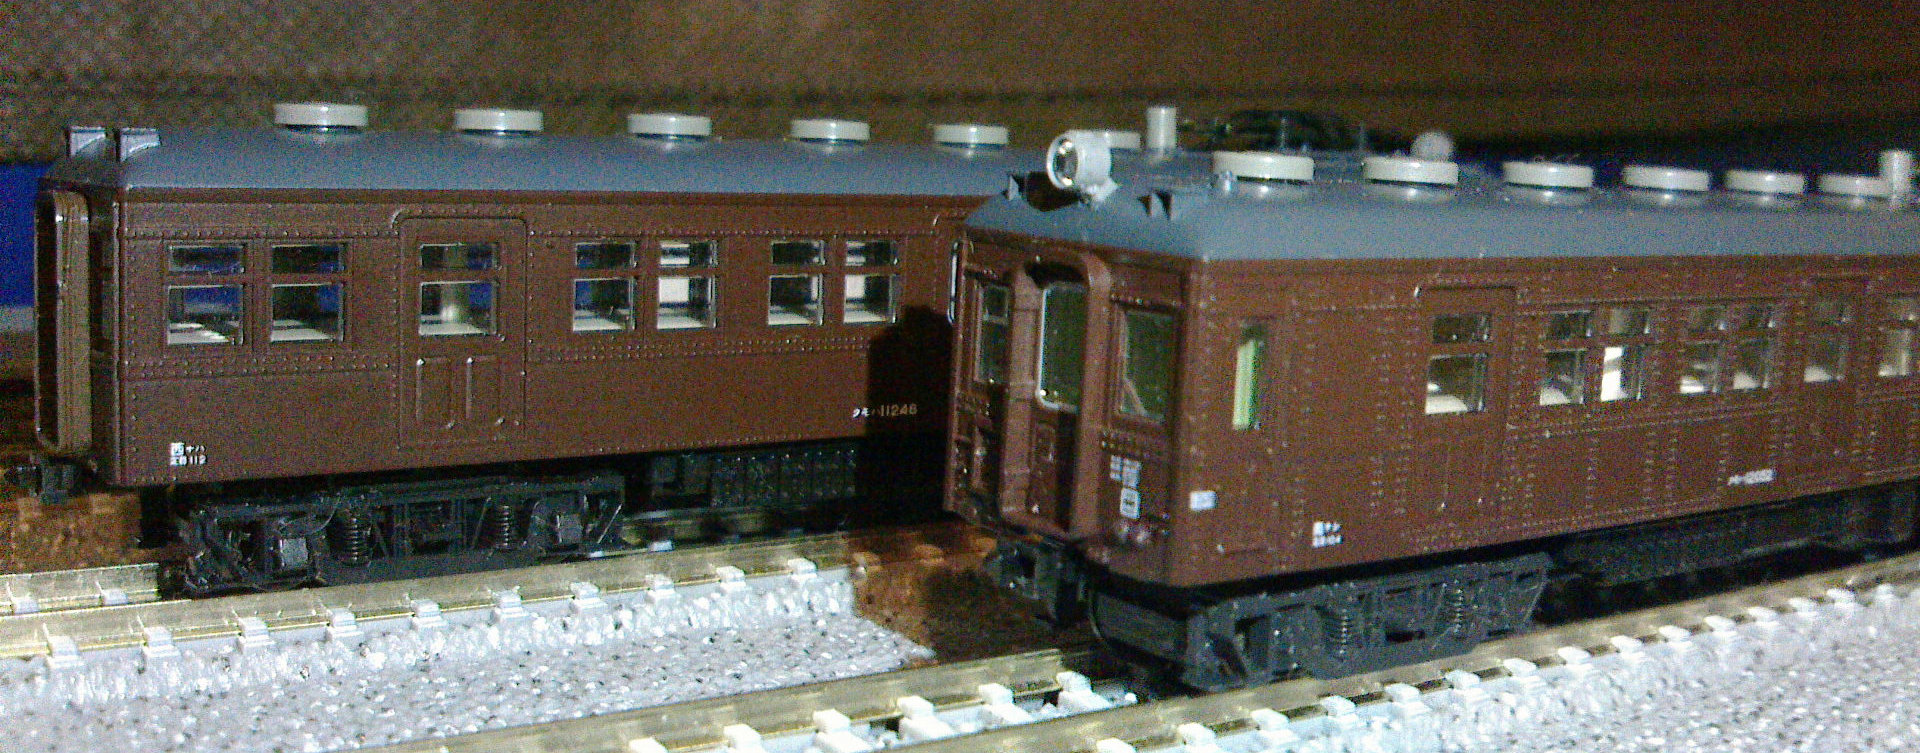 キラワケブログR ～アニメと鉄道とごく稀に創作～ 鉄道模型再収集開始 